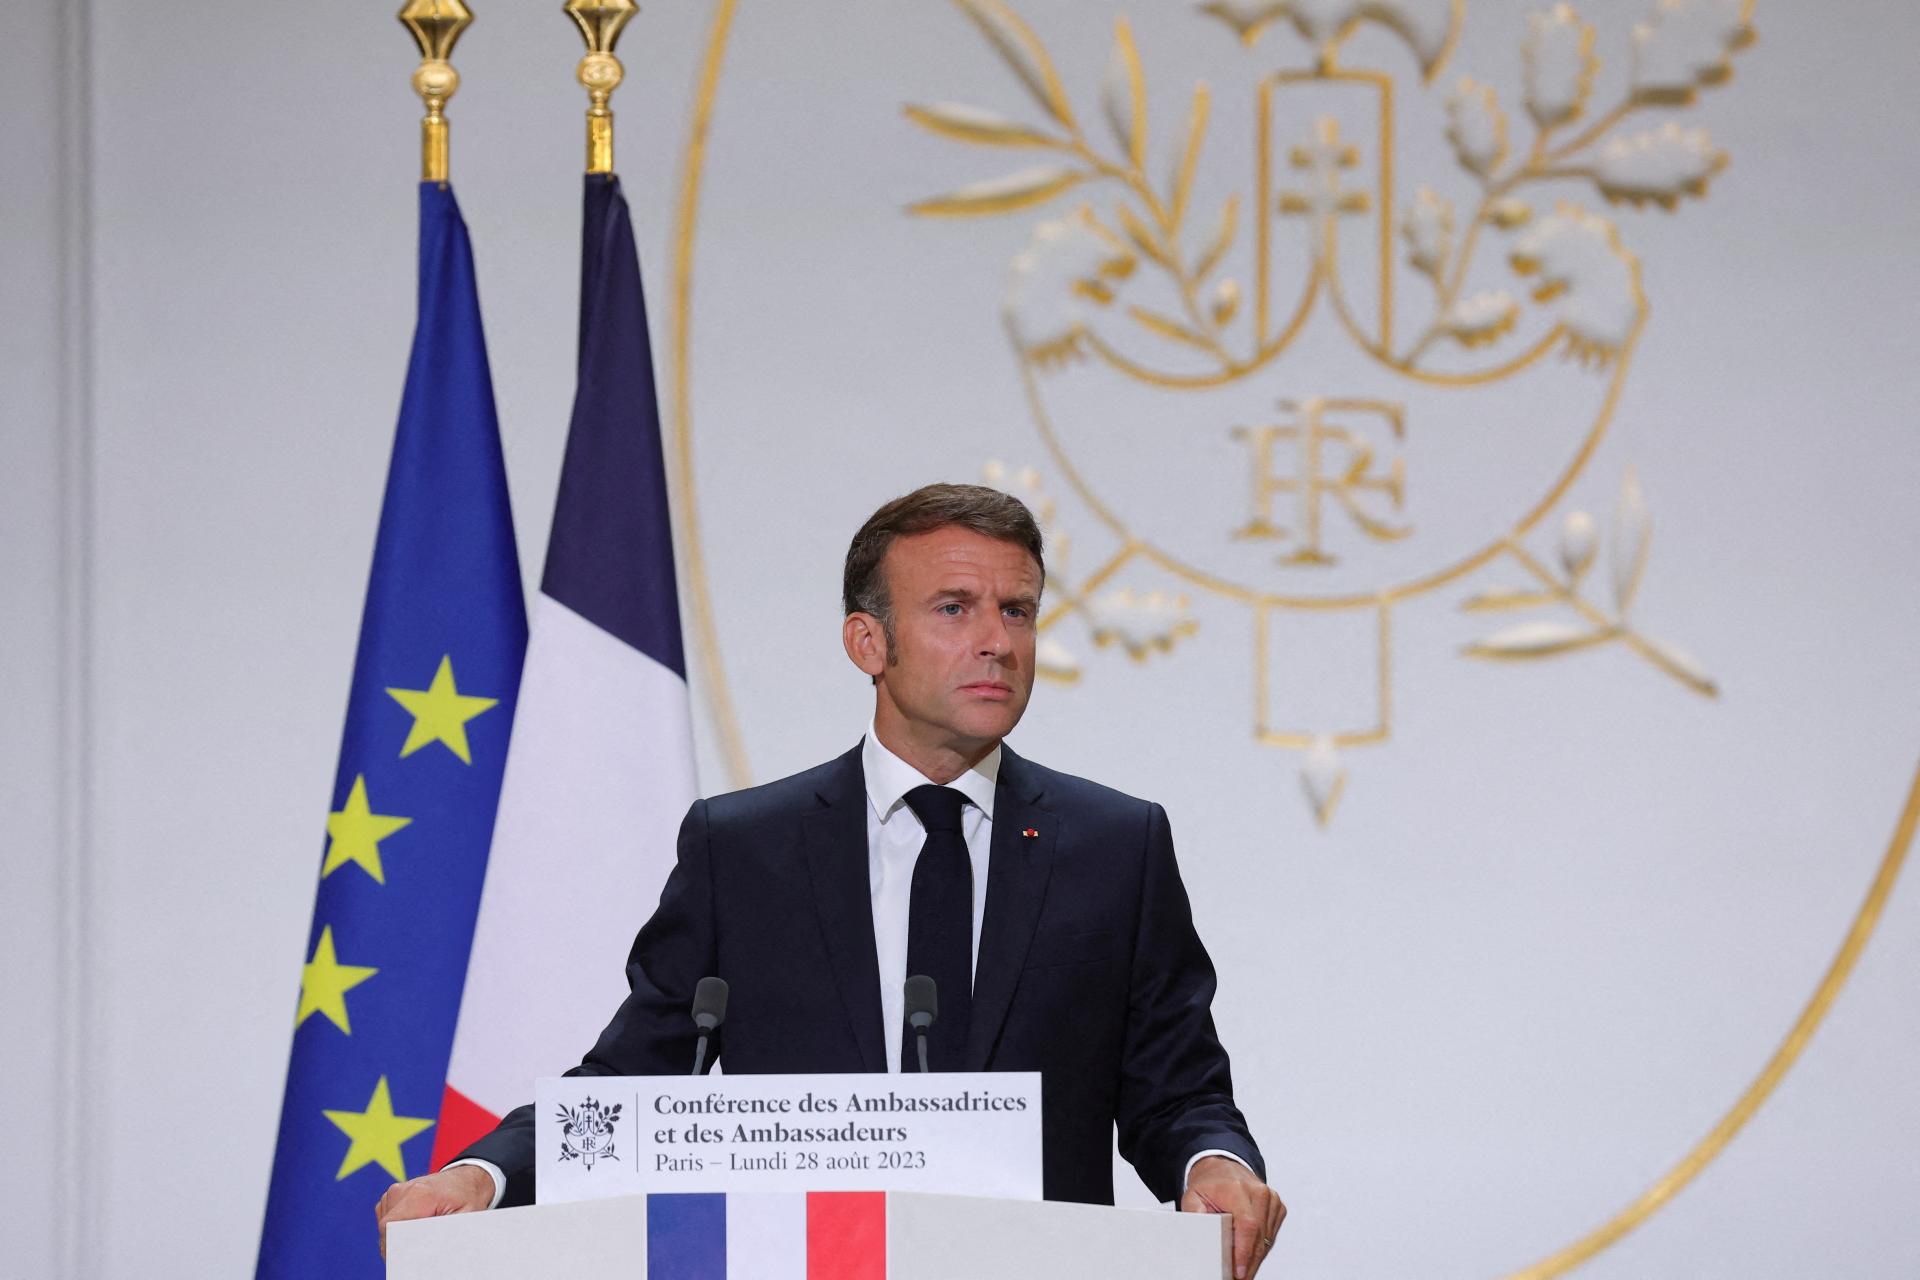 La France continue de soutenir l’Irak dans la lutte contre l’État islamique, a déclaré Macron après la mort de trois soldats